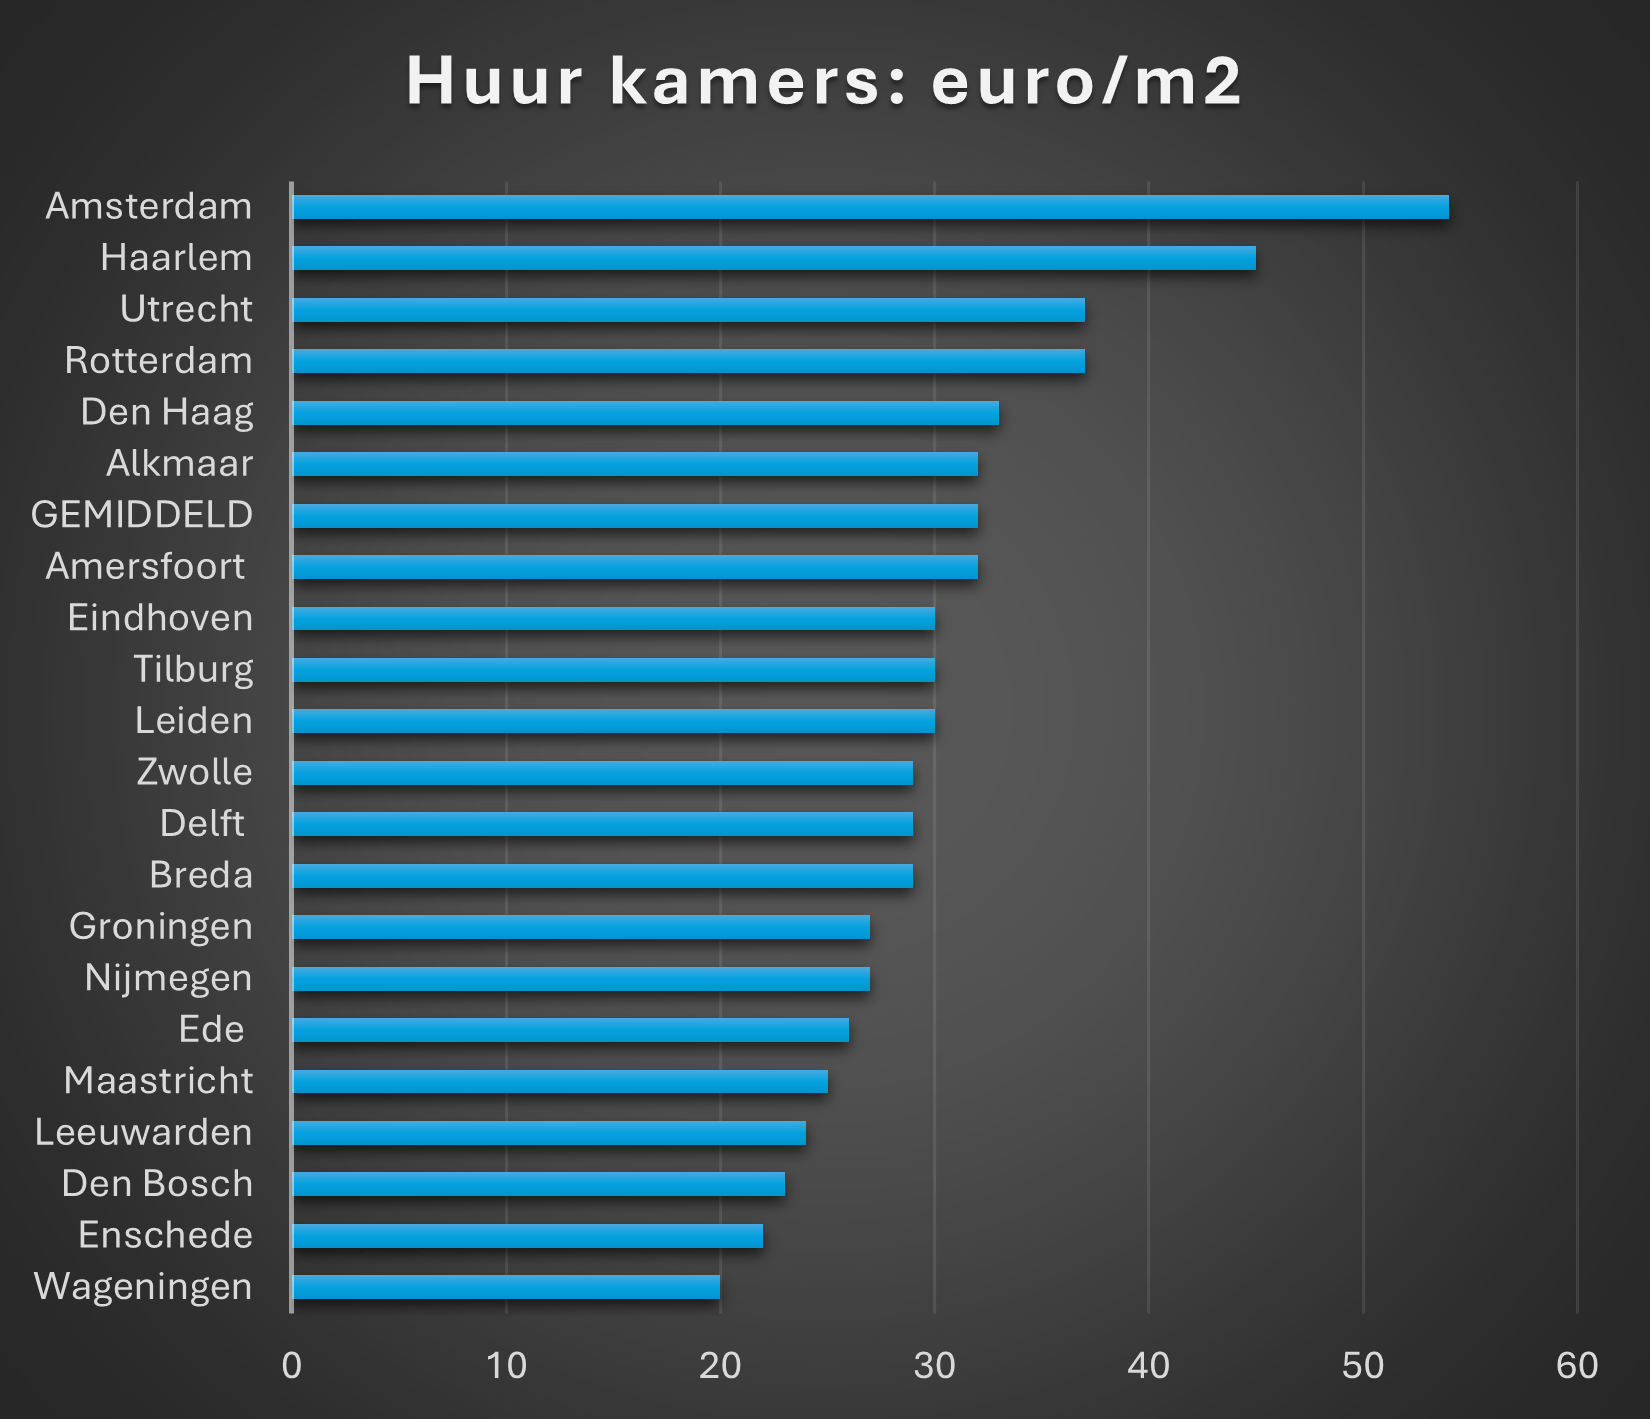 Tabel van de kamerhuur in euro's per vierkante meter